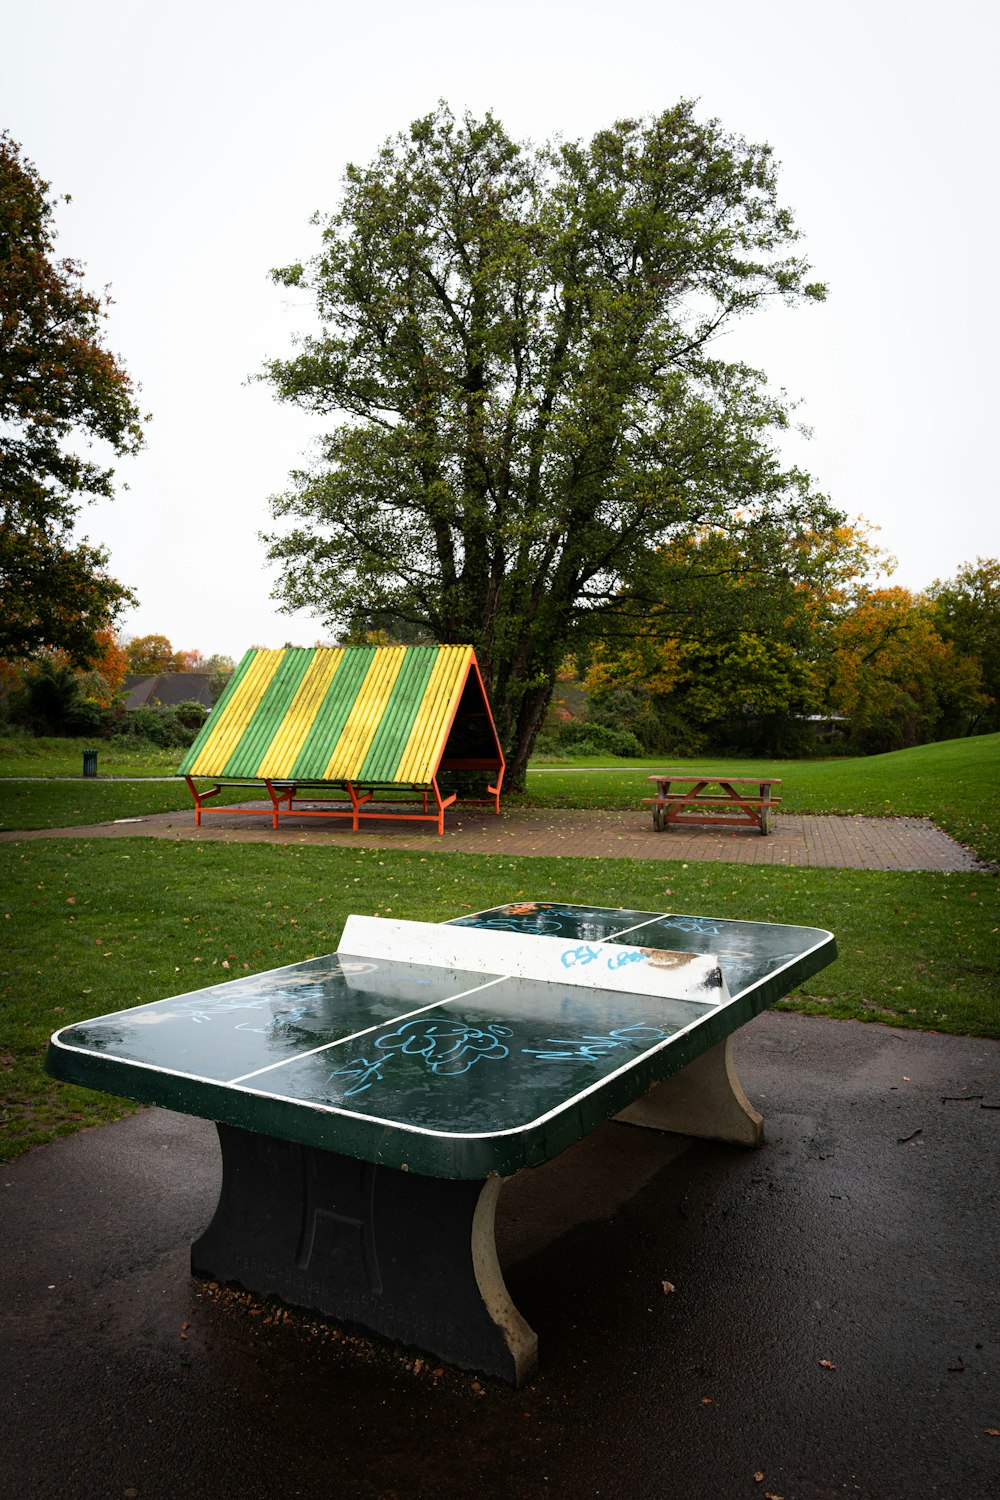 Una mesa de ping pong en medio de un parque